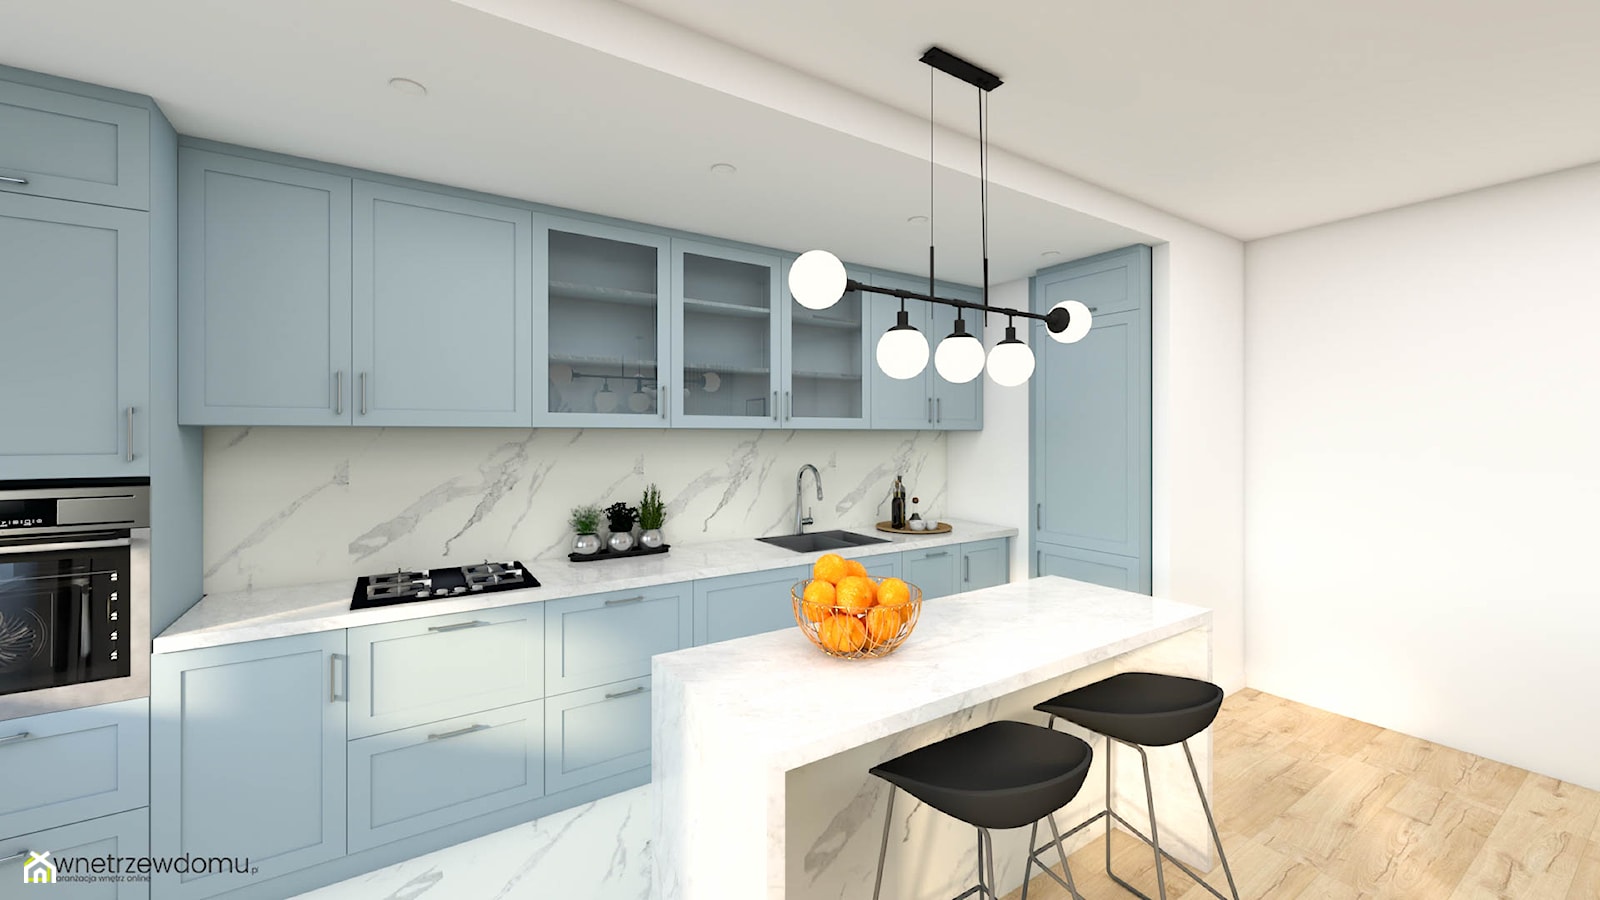 Salon z kuchnia w odcieniach błękitu - zdjęcie od wnetrzewdomu - Homebook